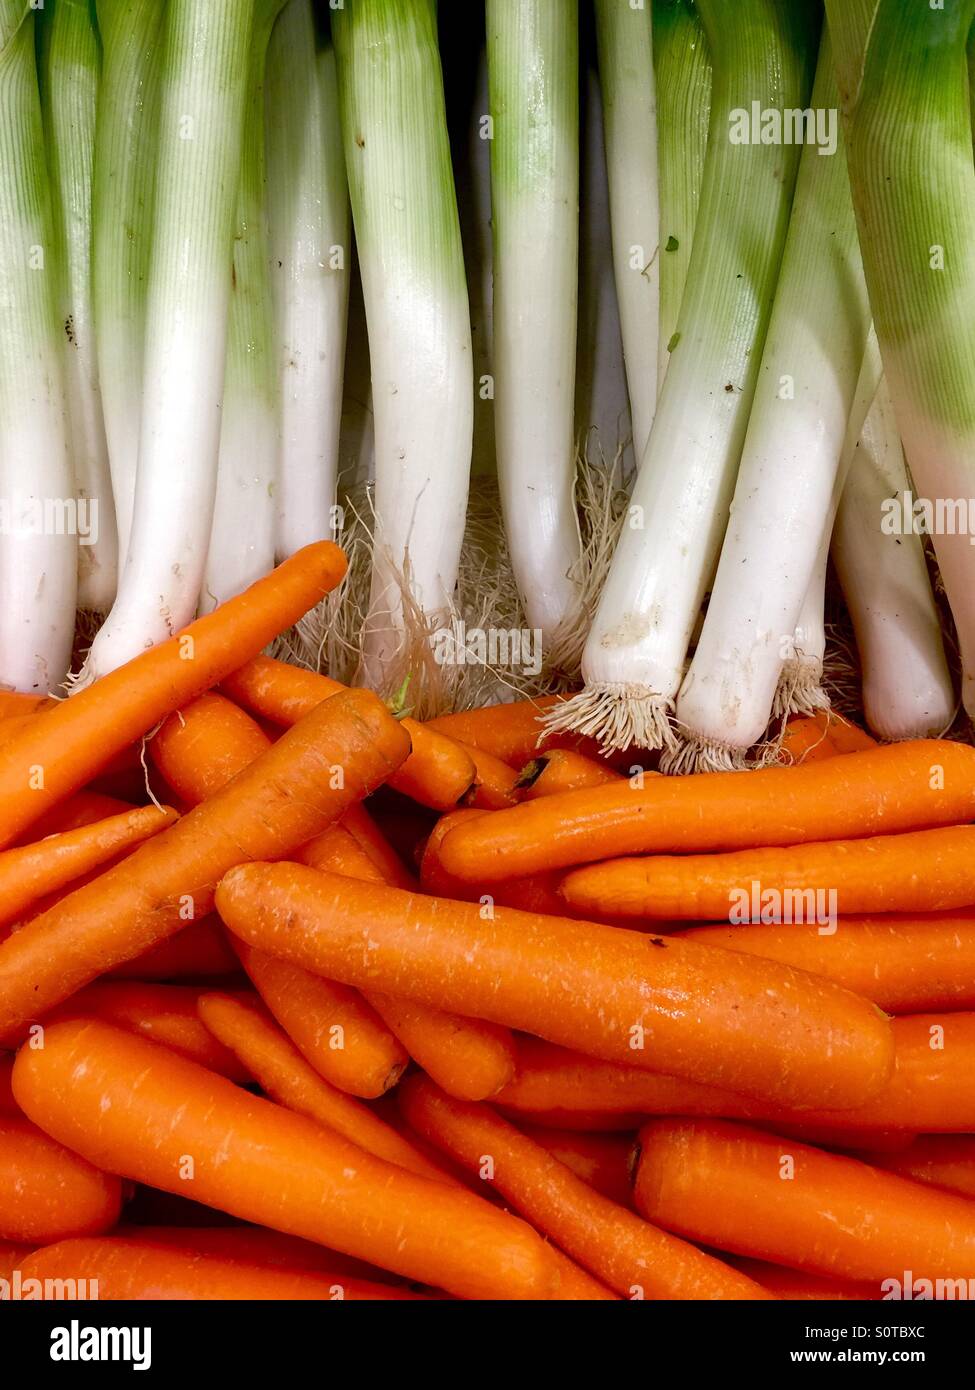 Gemüse, Karotten, Möhren. Gemüse, Lecks, Leck, Bio, Essen Stockfotografie -  Alamy